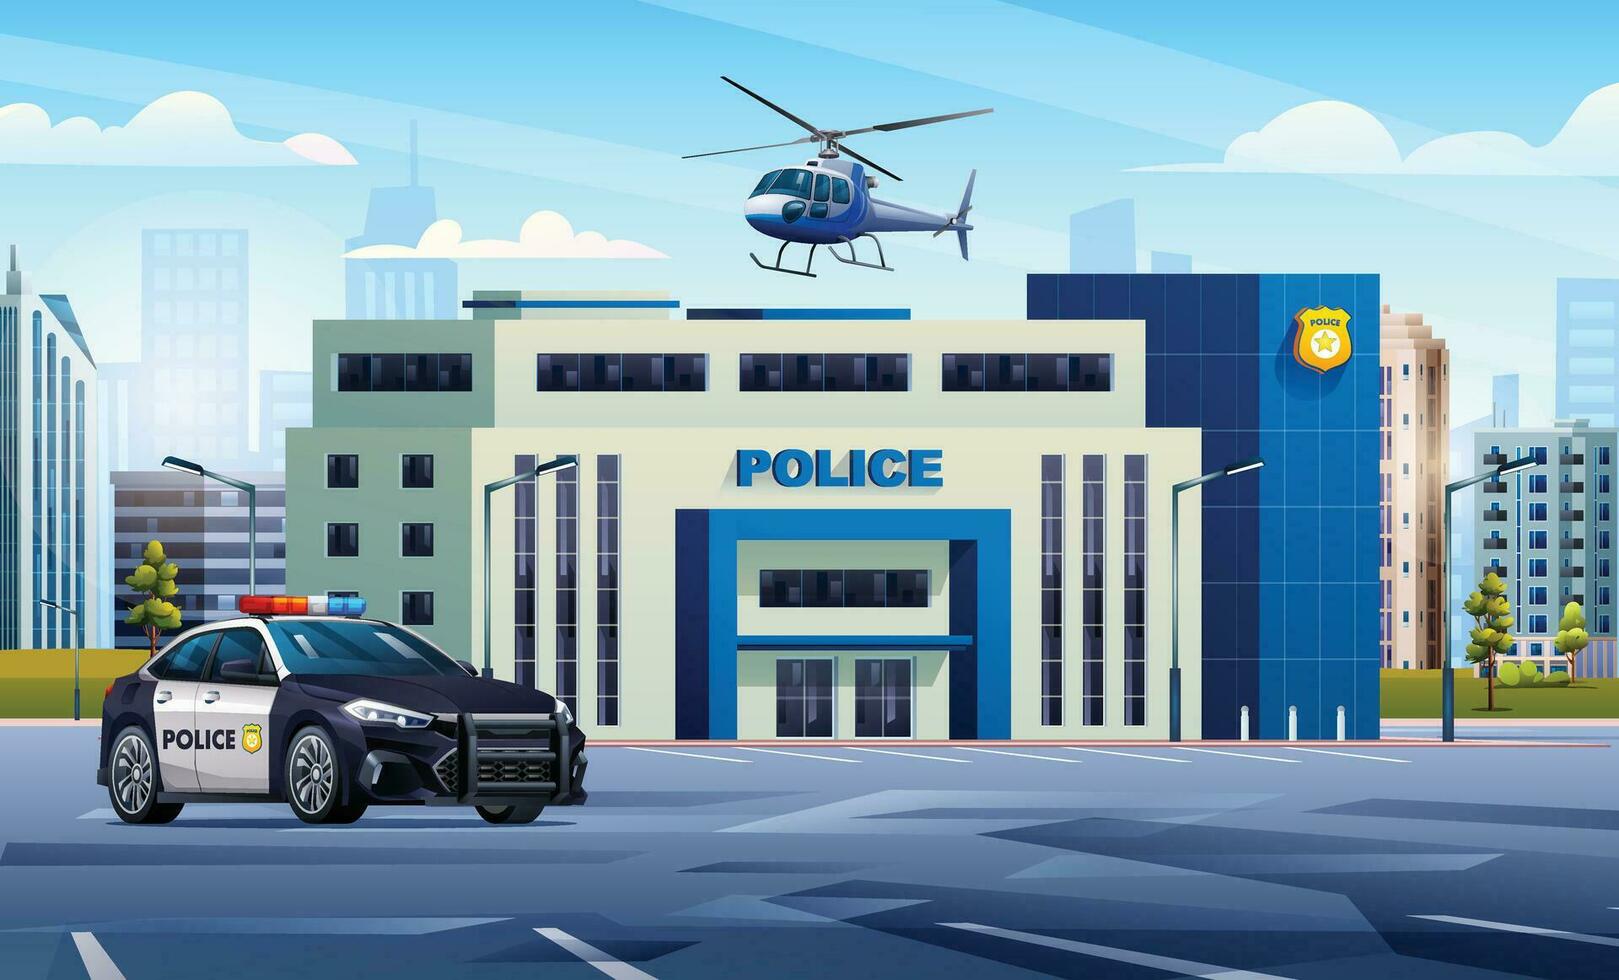 Polizei Bahnhof Gebäude mit patrouillieren Auto und Hubschrauber auf Stadtbild Hintergrund. Polizei Abteilung Büro. Stadt Landschaft Vektor Karikatur Illustration